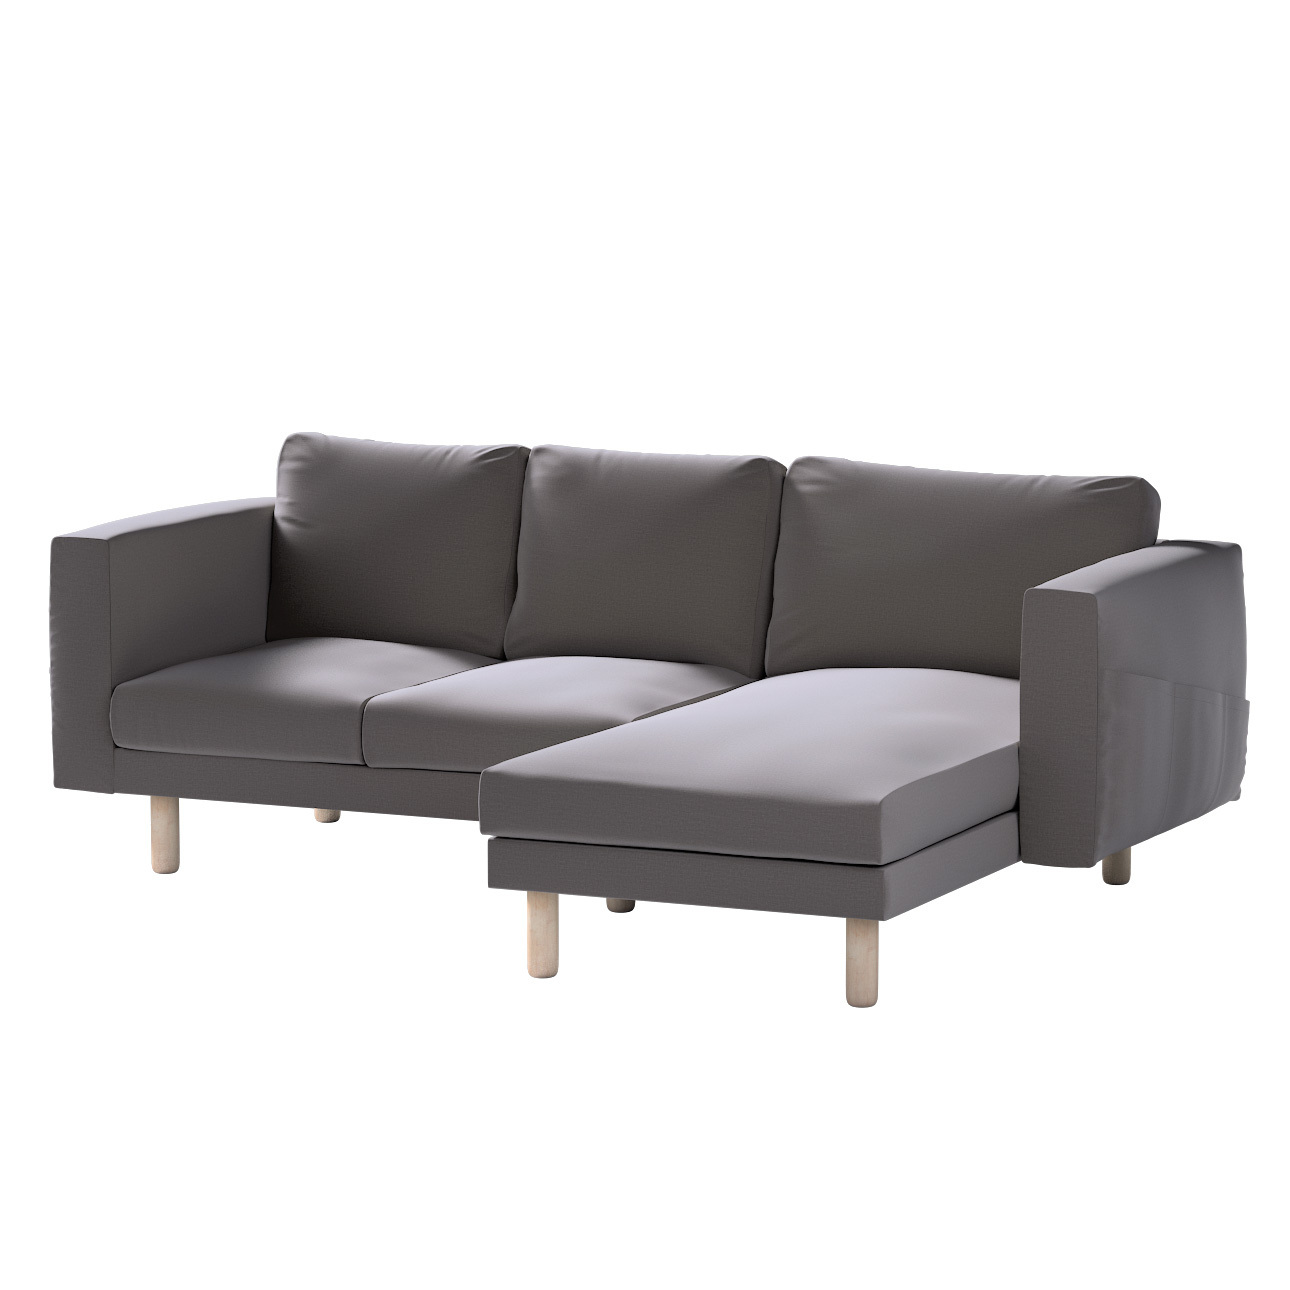 Bezug für Norsborg 3-Sitzer Sofa mit Recamiere, braun, Norsborg Bezug für 3 günstig online kaufen